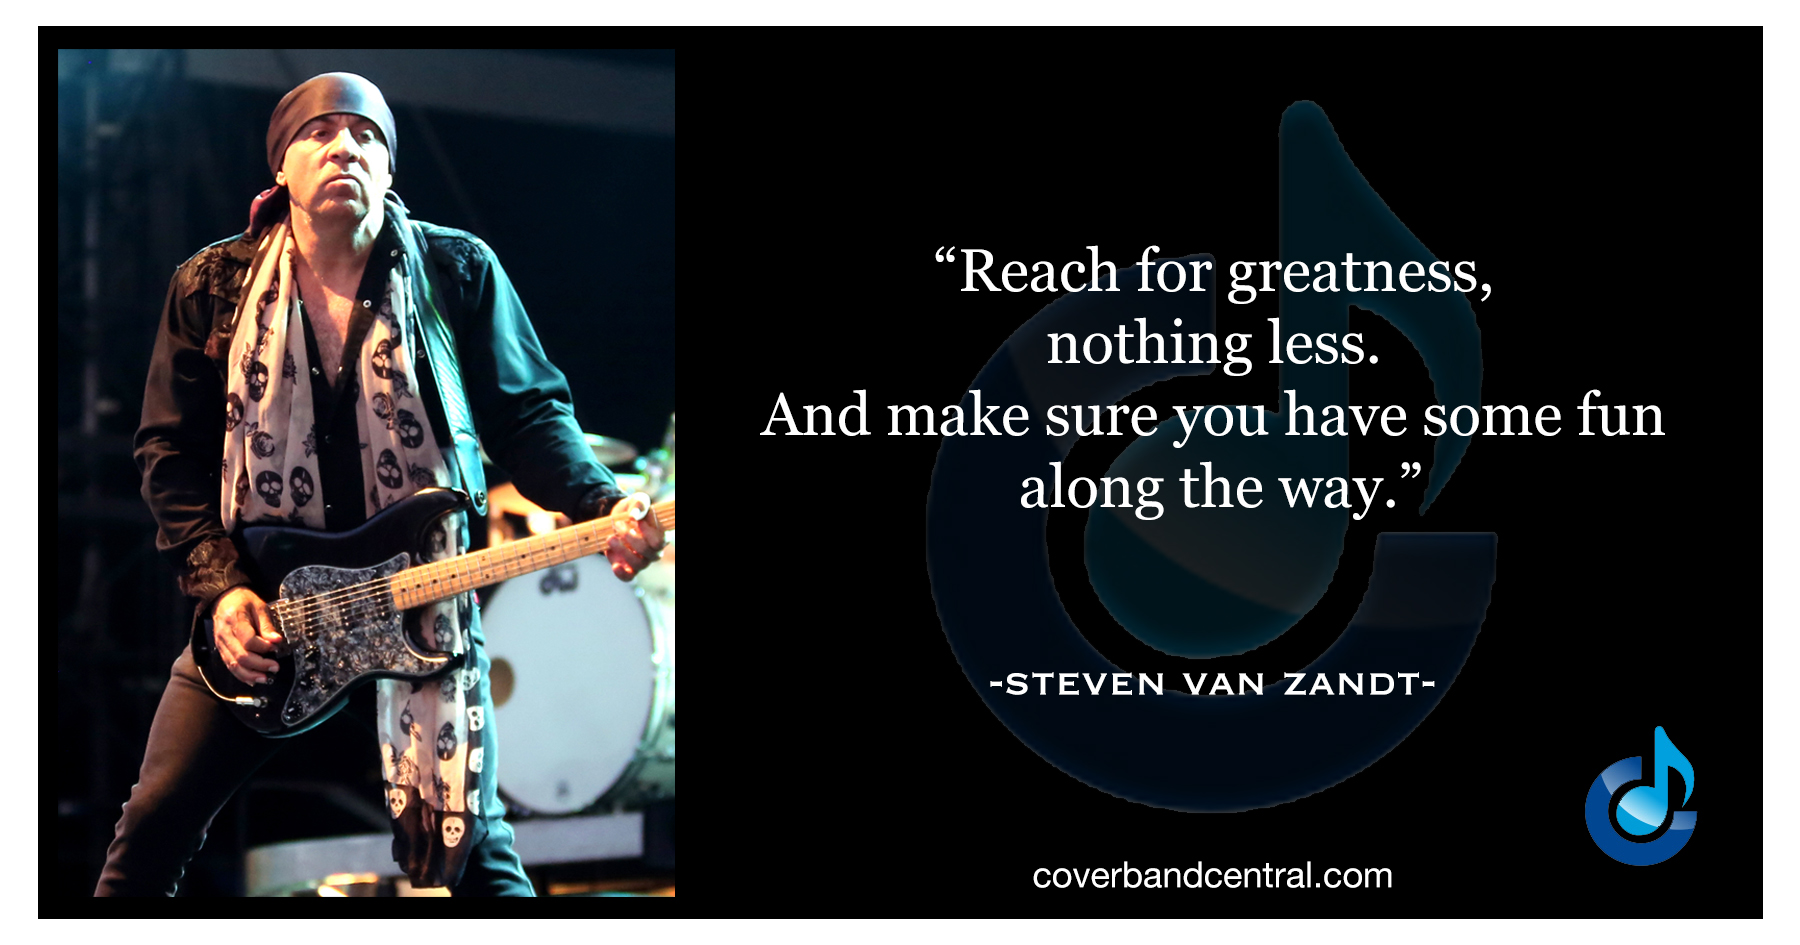 Steven Van Zandt quote